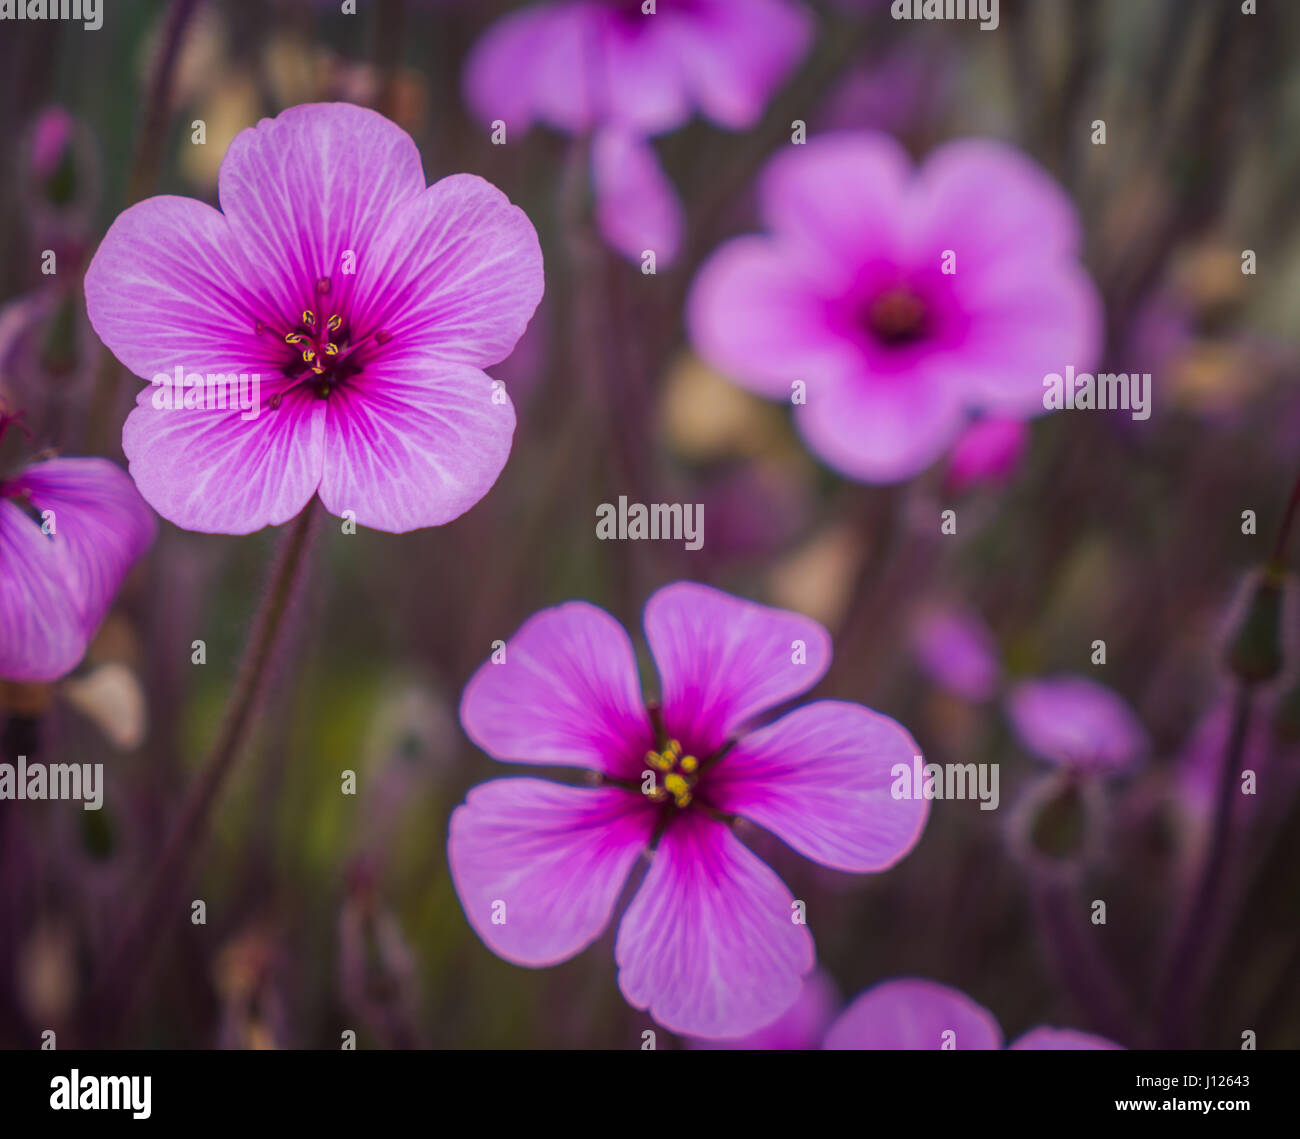 Pink flowers, oxalis in garden Stock Photo